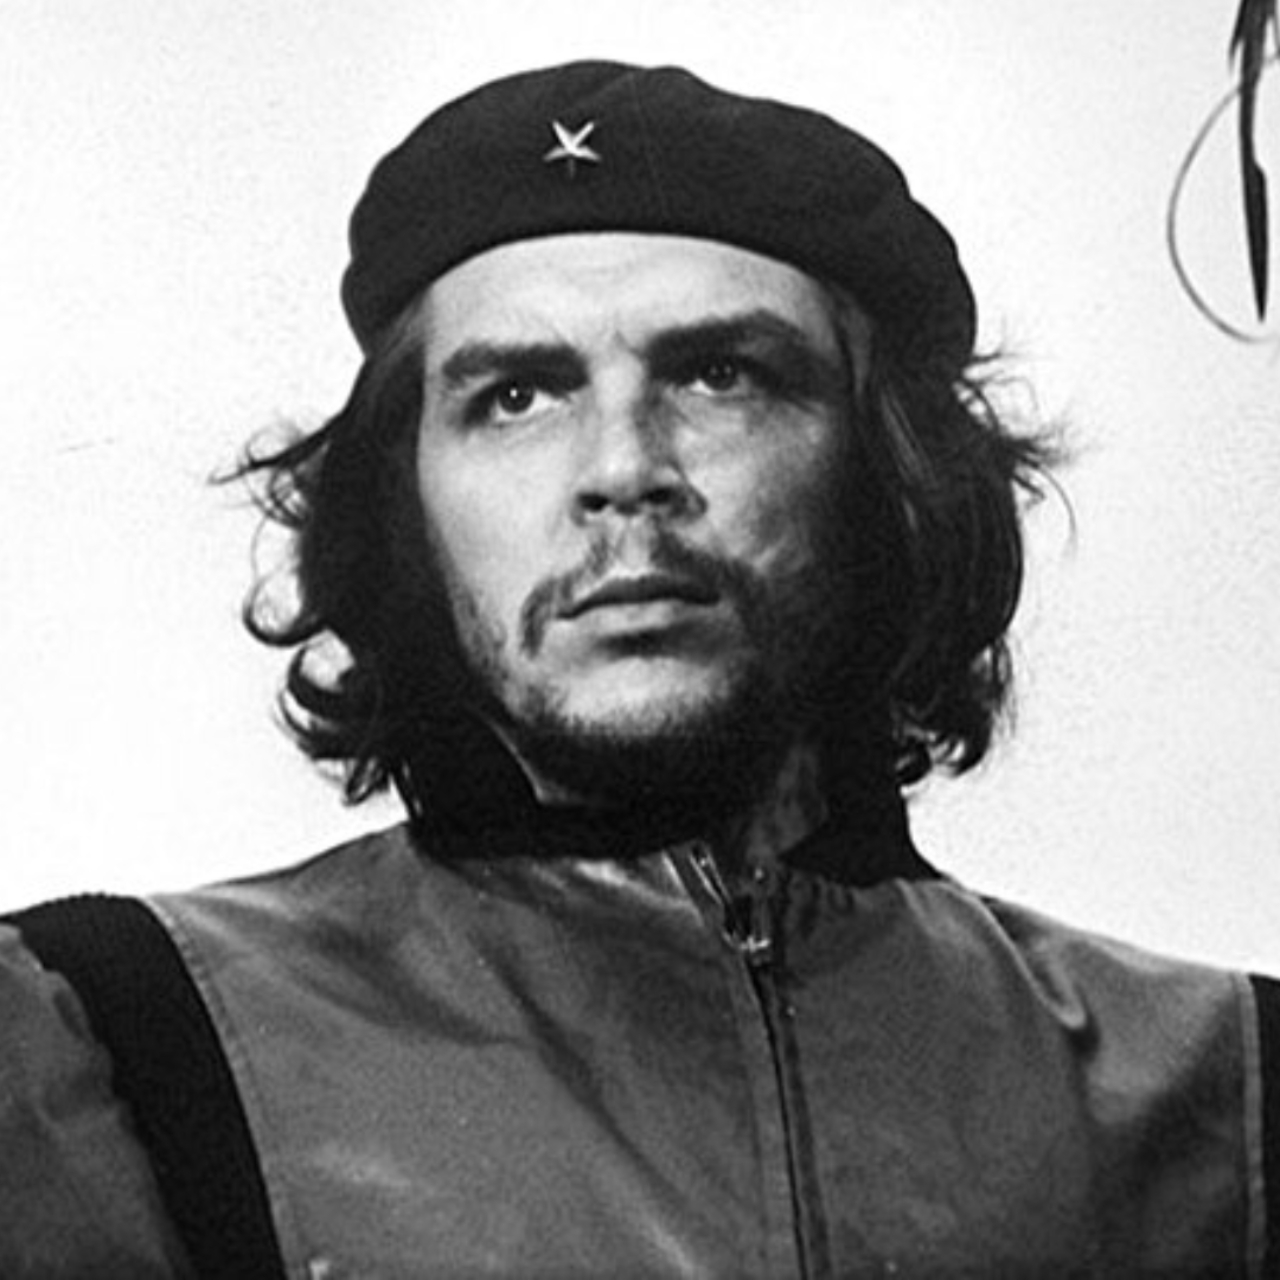 Fotografia mais emblemática de Che Guevara